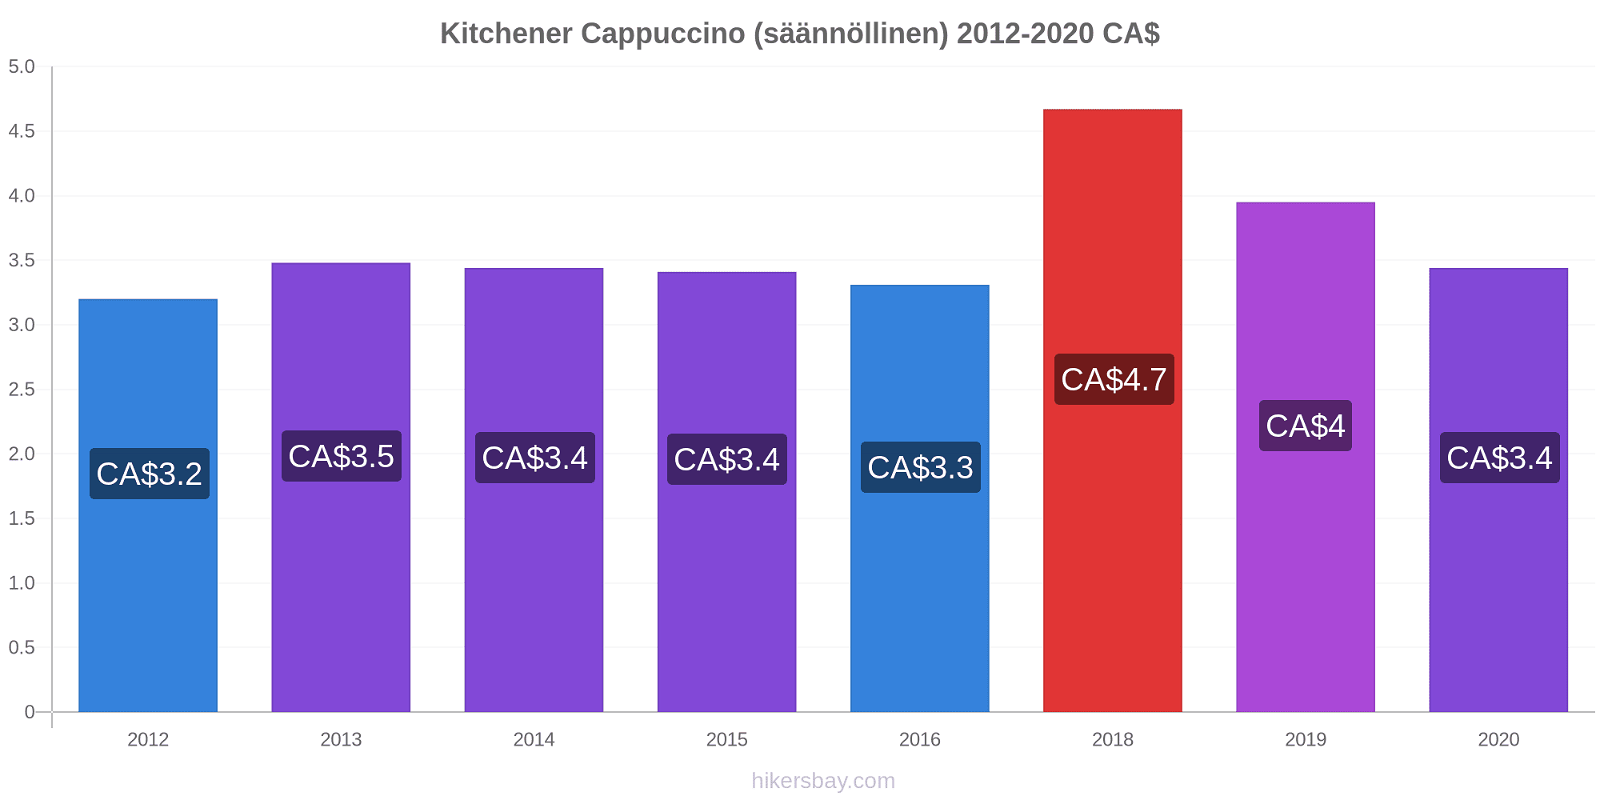 Kitchener hintojen muutokset Cappuccino (säännöllinen) hikersbay.com